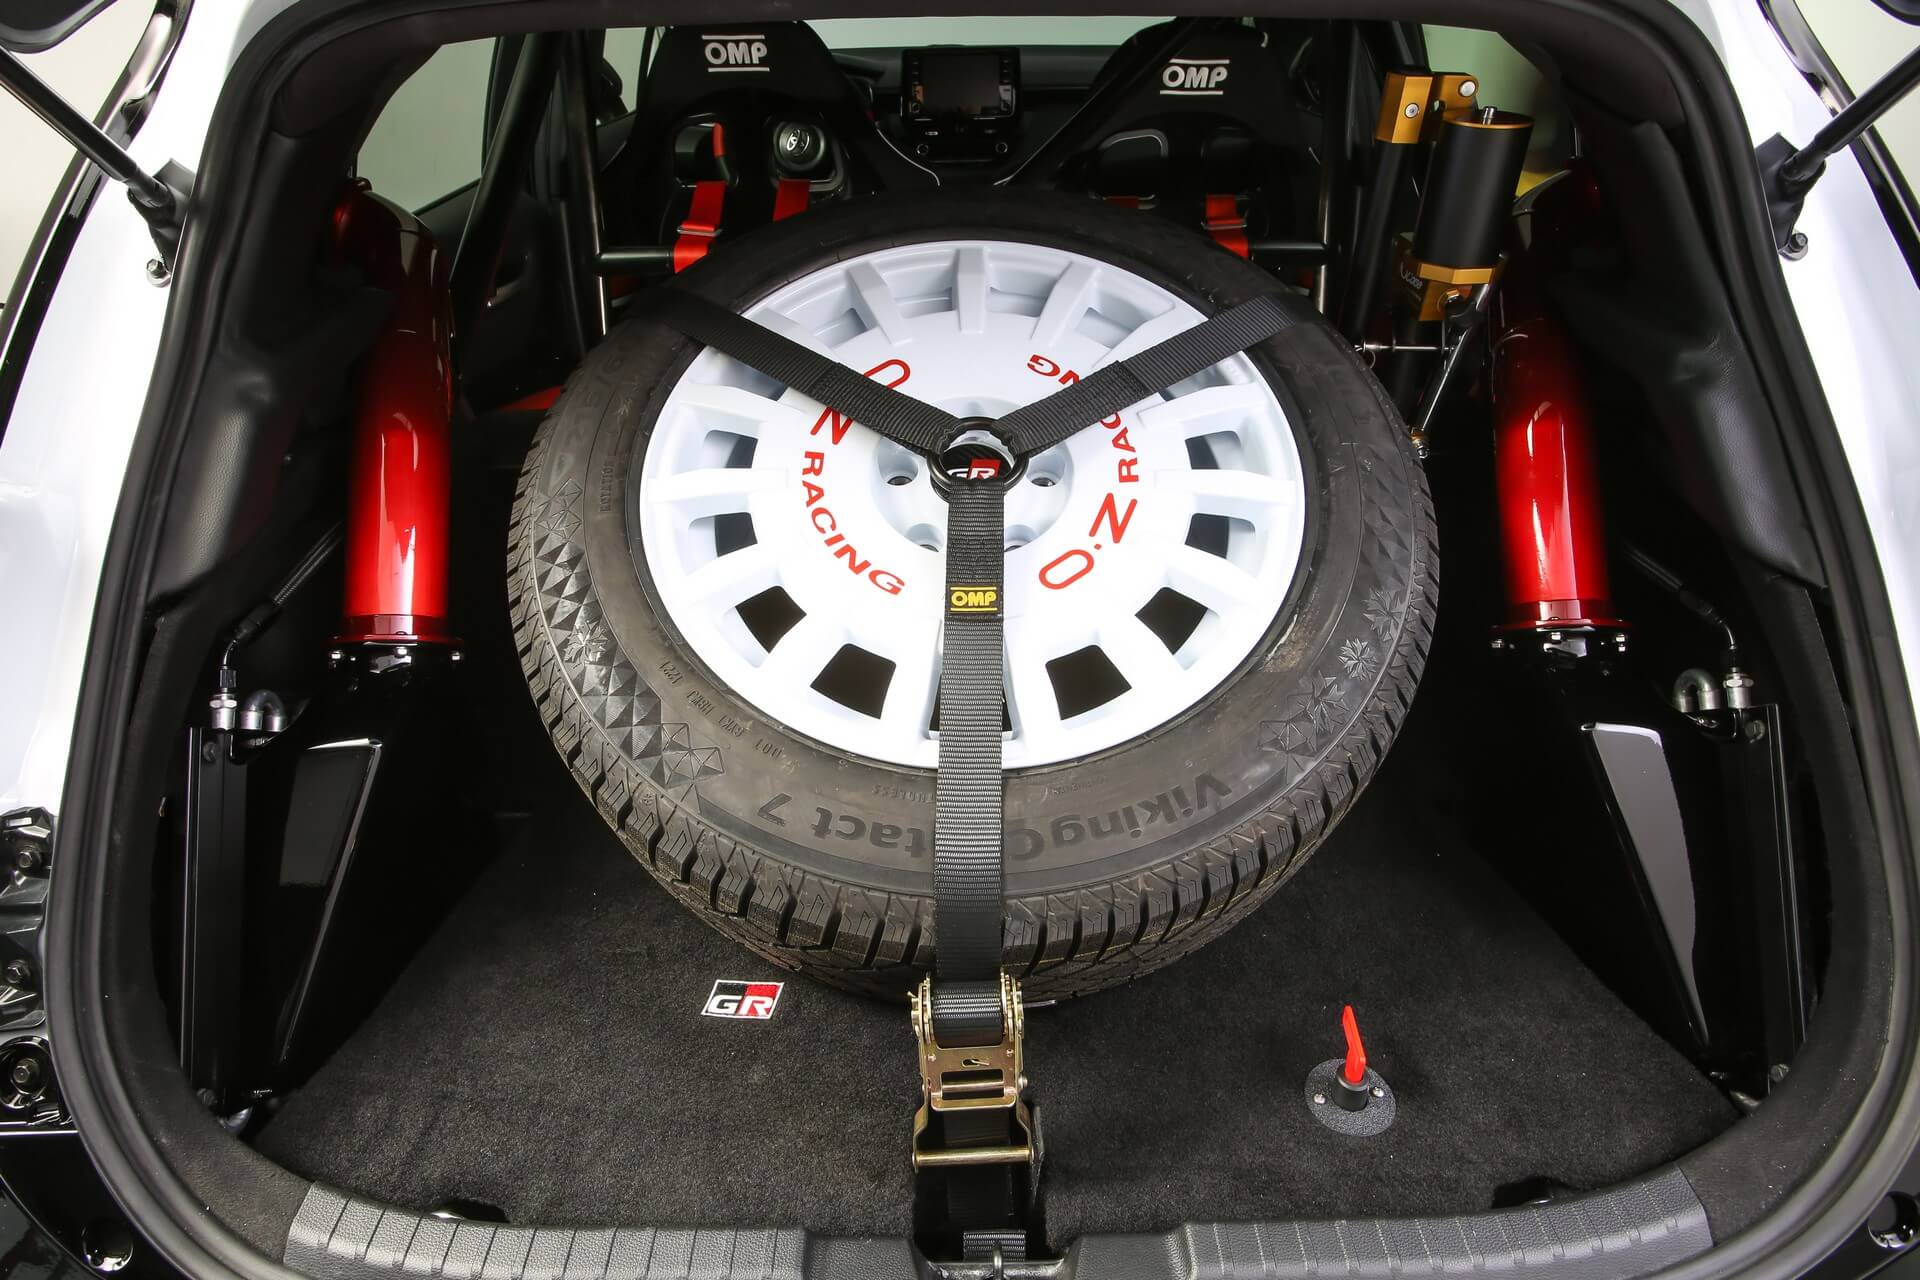 Toyota GR Corolla Rally Concept pormenor roda na bagageira